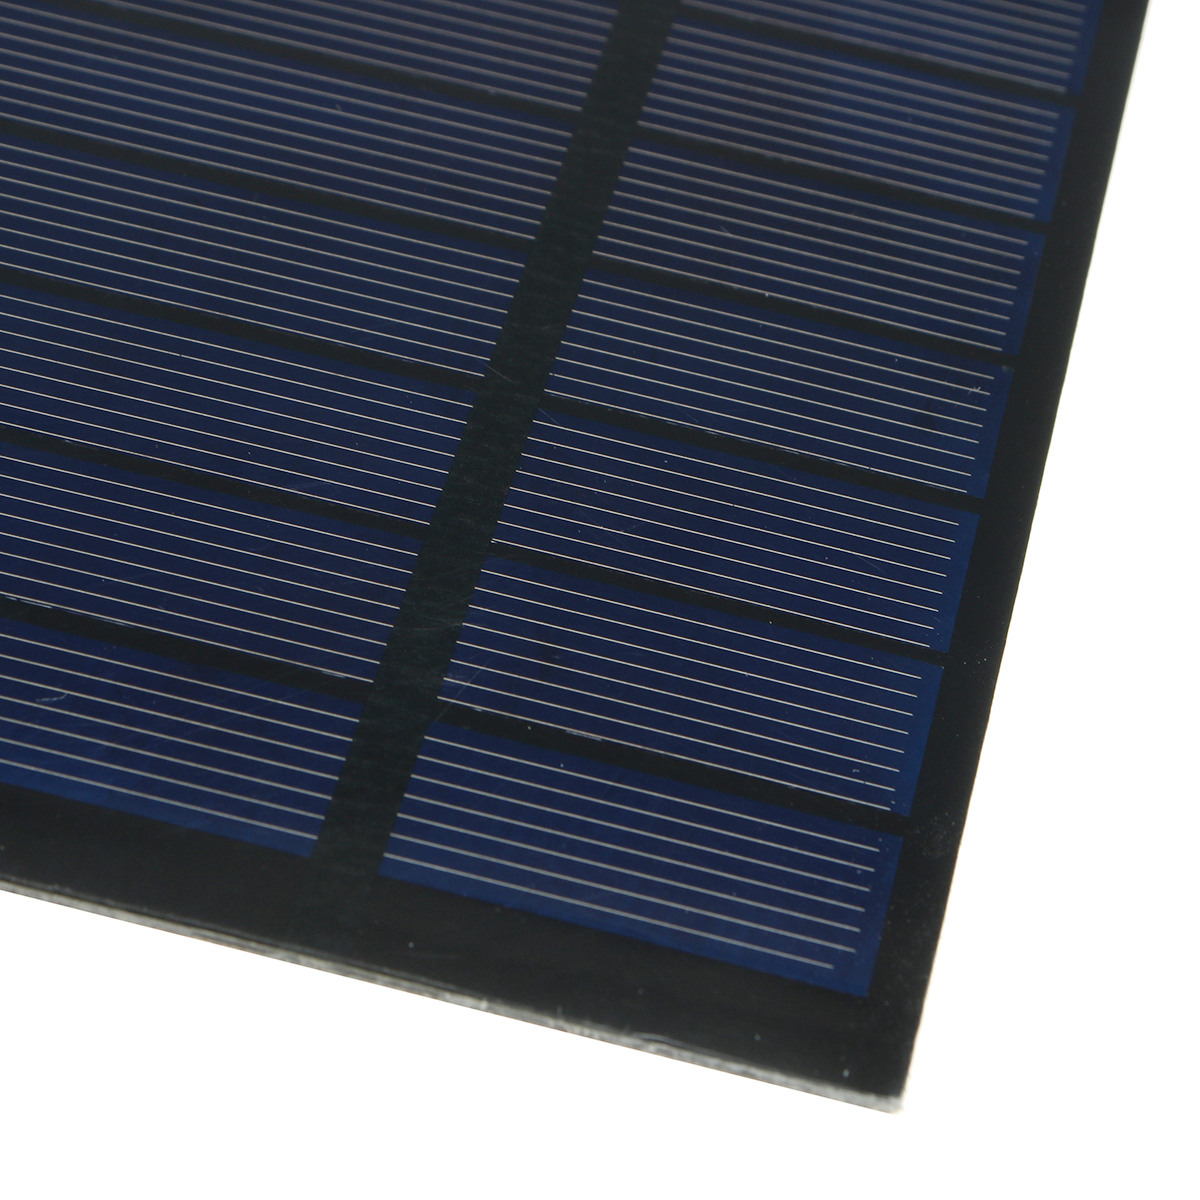 Solar-Panel-Powered-Fan-Mini-Ventilator-20W-Solar-Panel-6-in-Exhaust-Fan-1803571-10